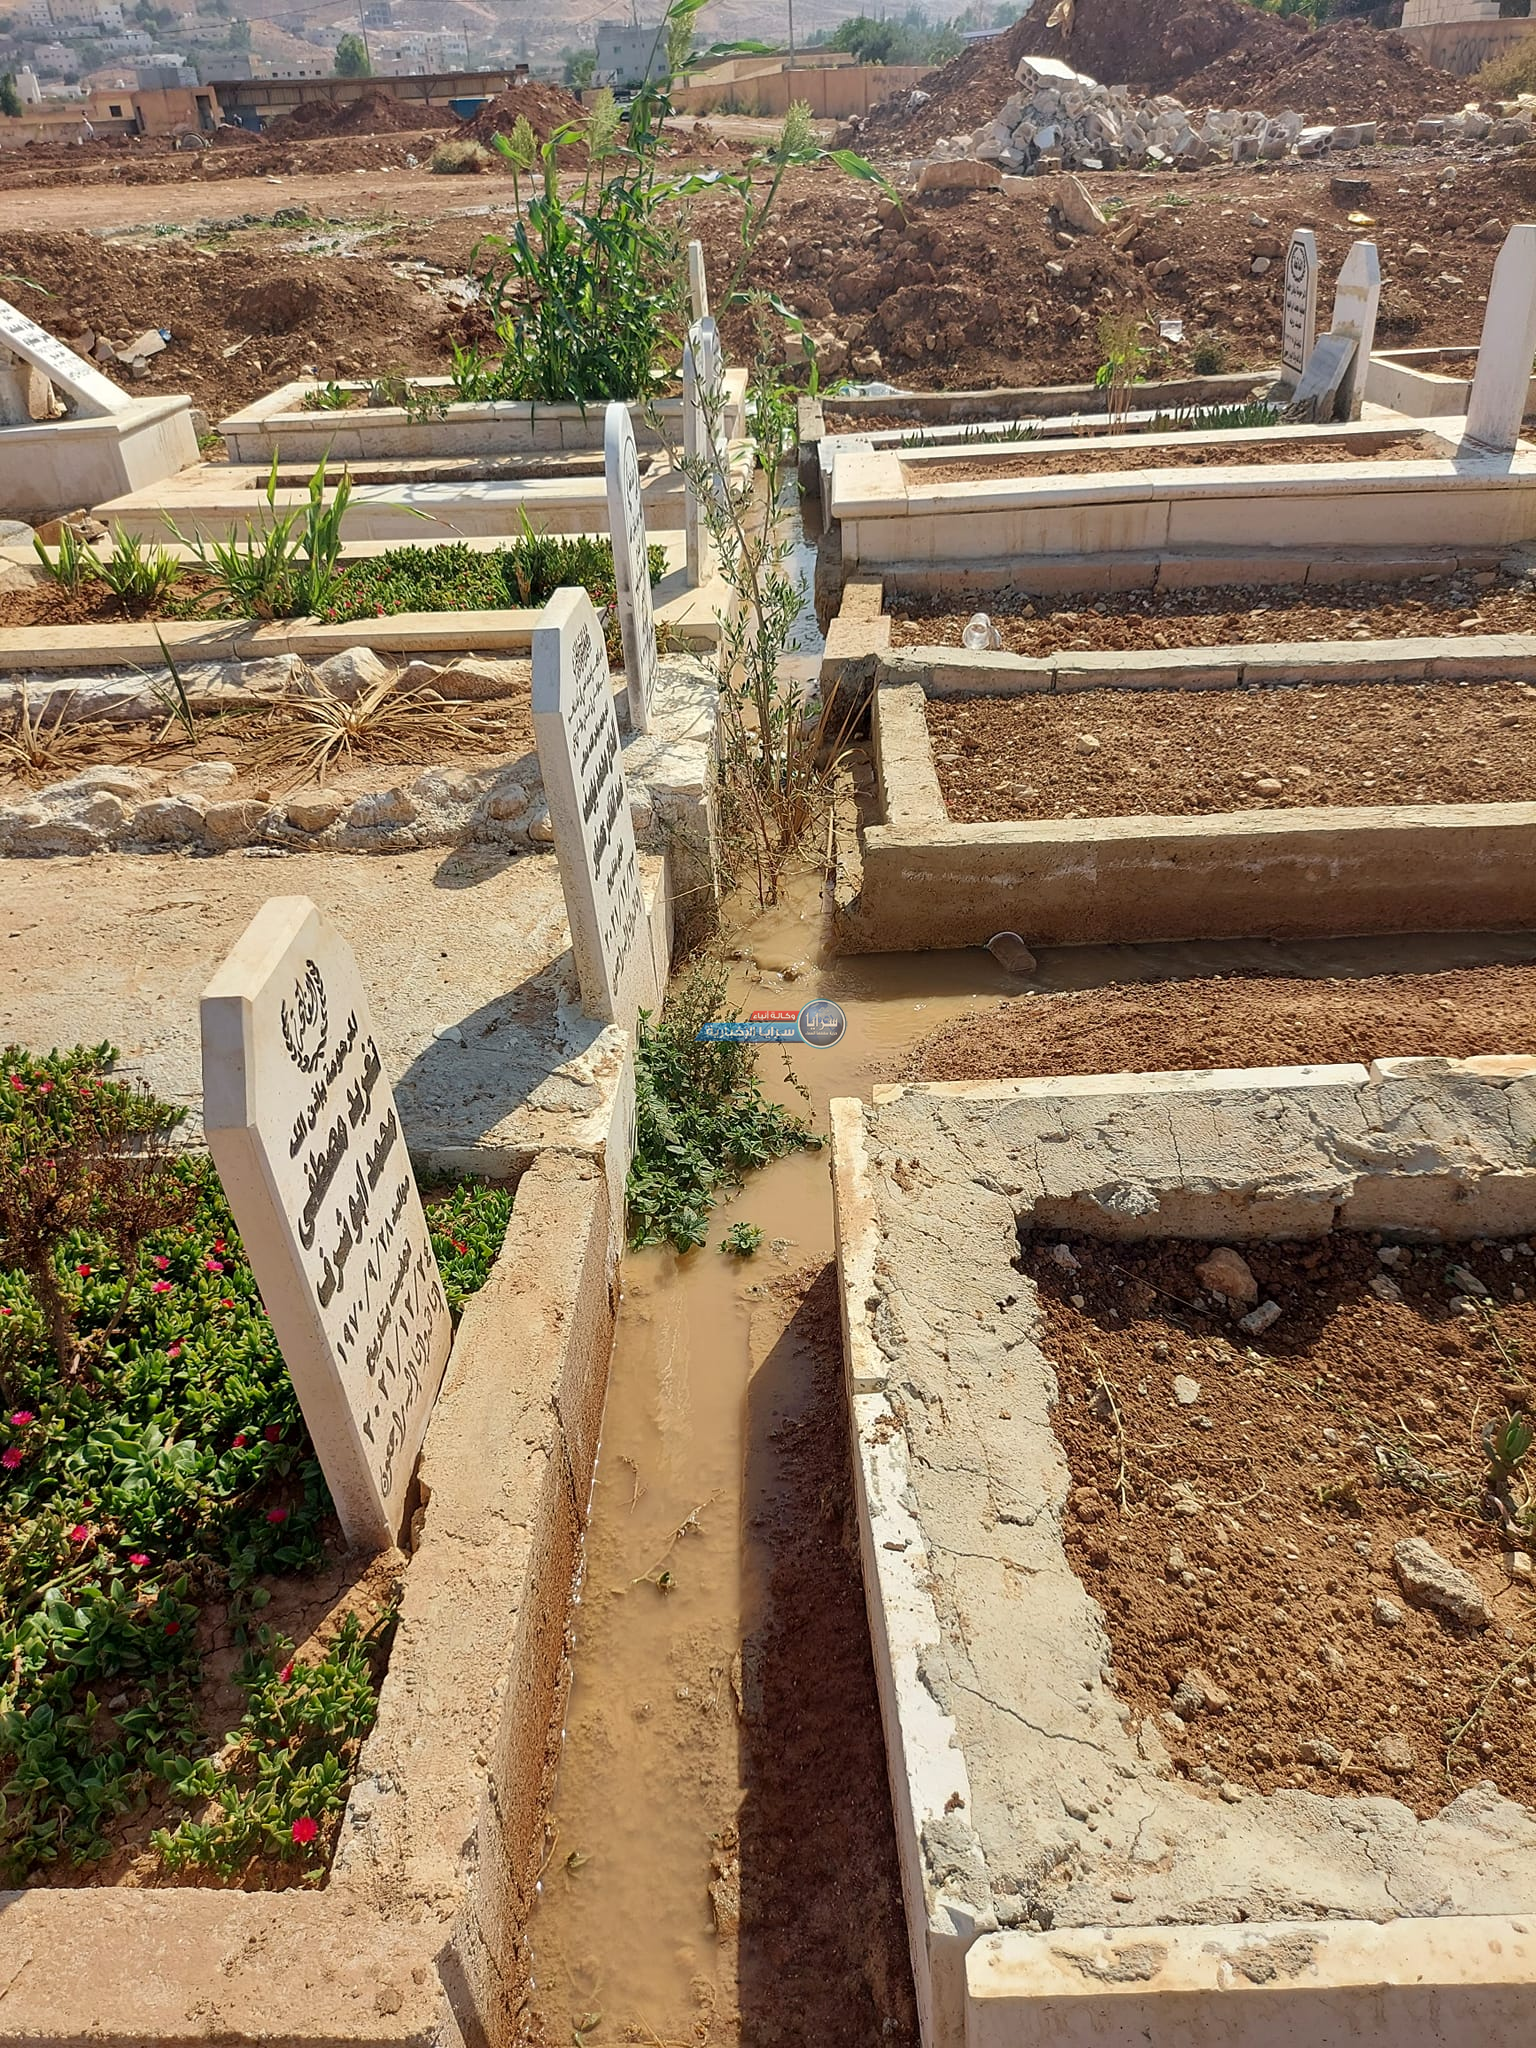 بالفيديو والصور .. قبور تَغرق بالمياه في مقبرة موبص بمنطقة عين الباشا